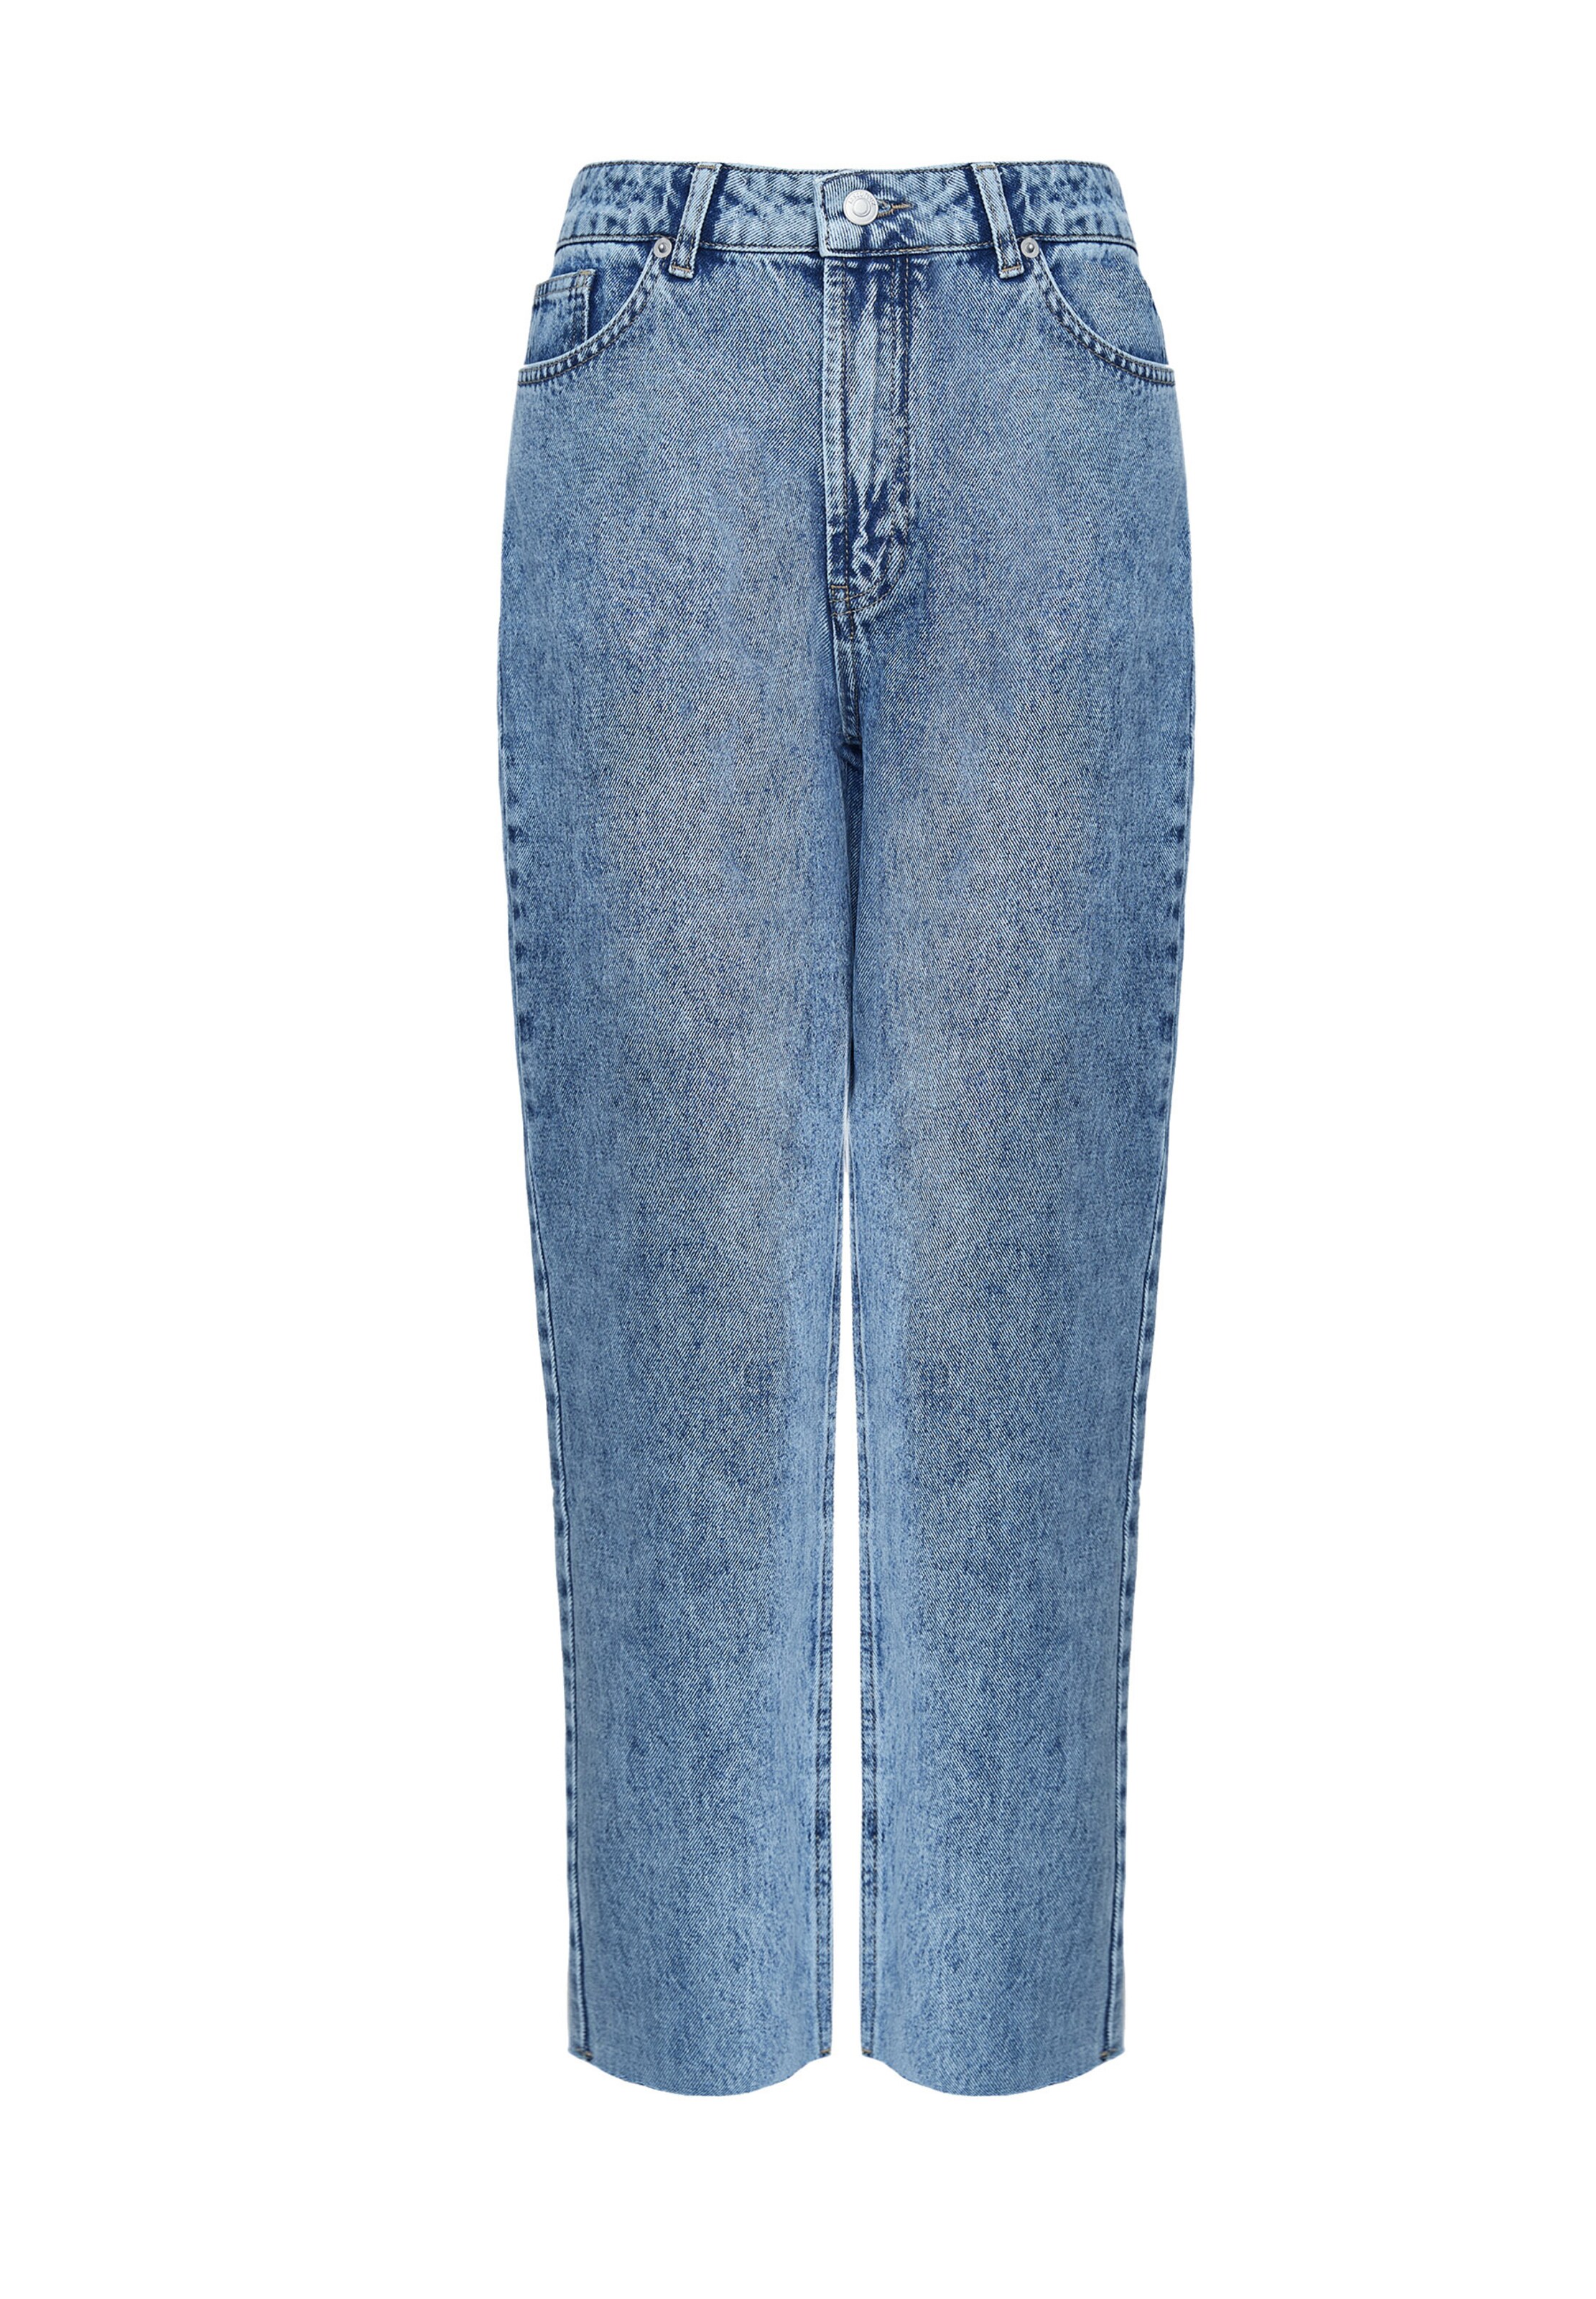 Frauen Jeans 12storeez Jeans in Hellblau - DZ43449